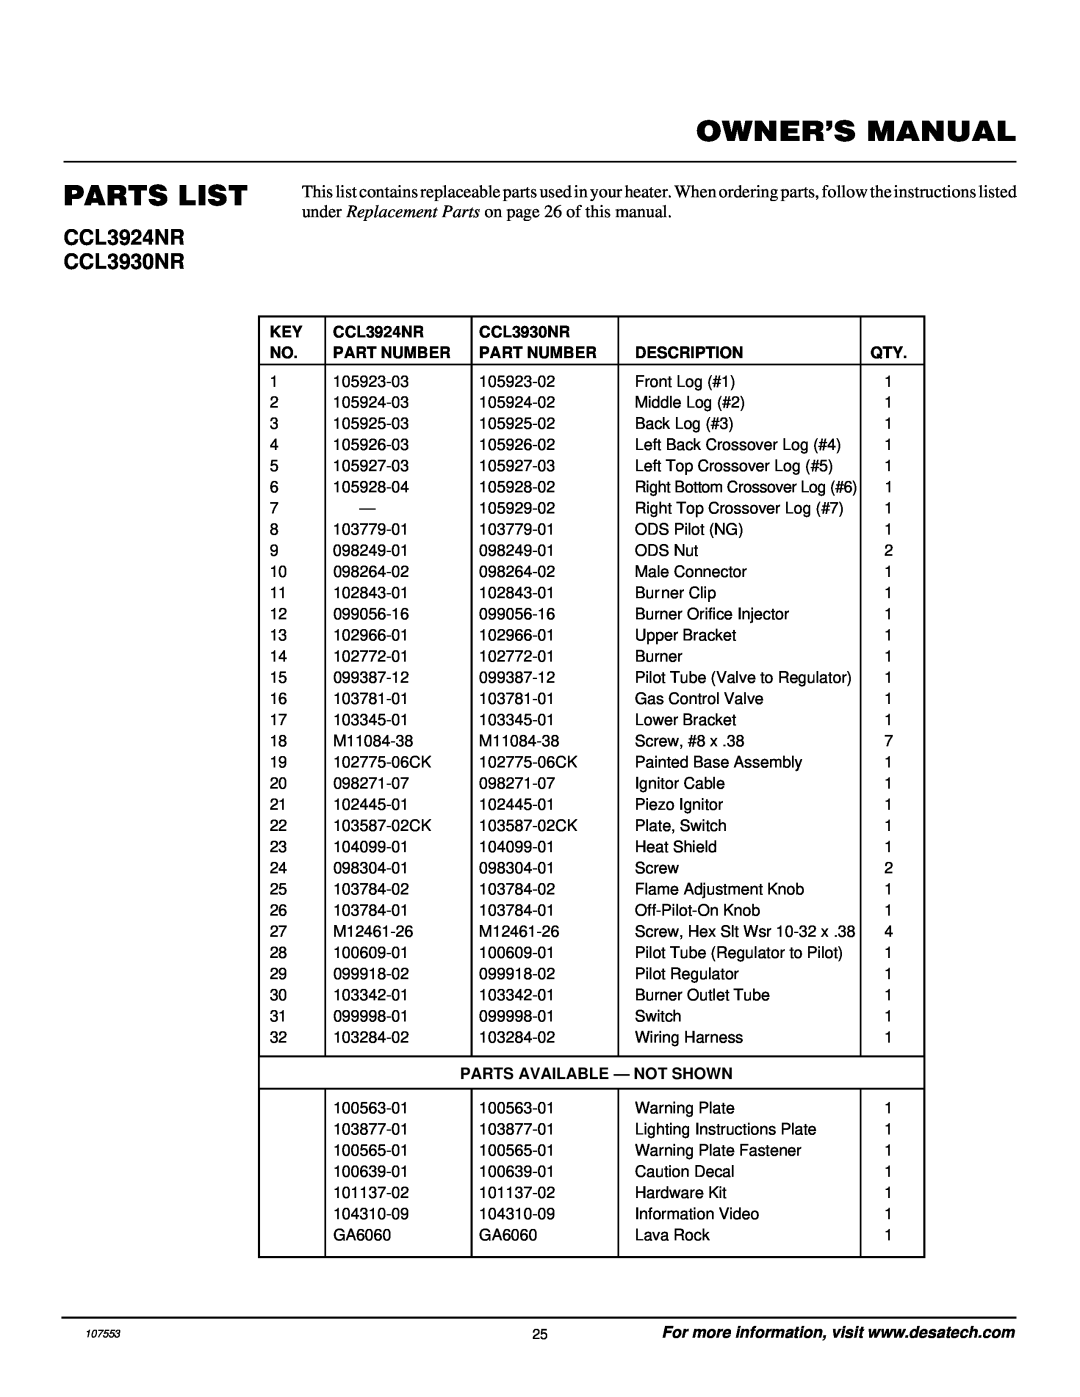 Desa installation manual Parts List, CCL3924NR CCL3930NR, Part Number, Description, Parts Available - Not Shown 